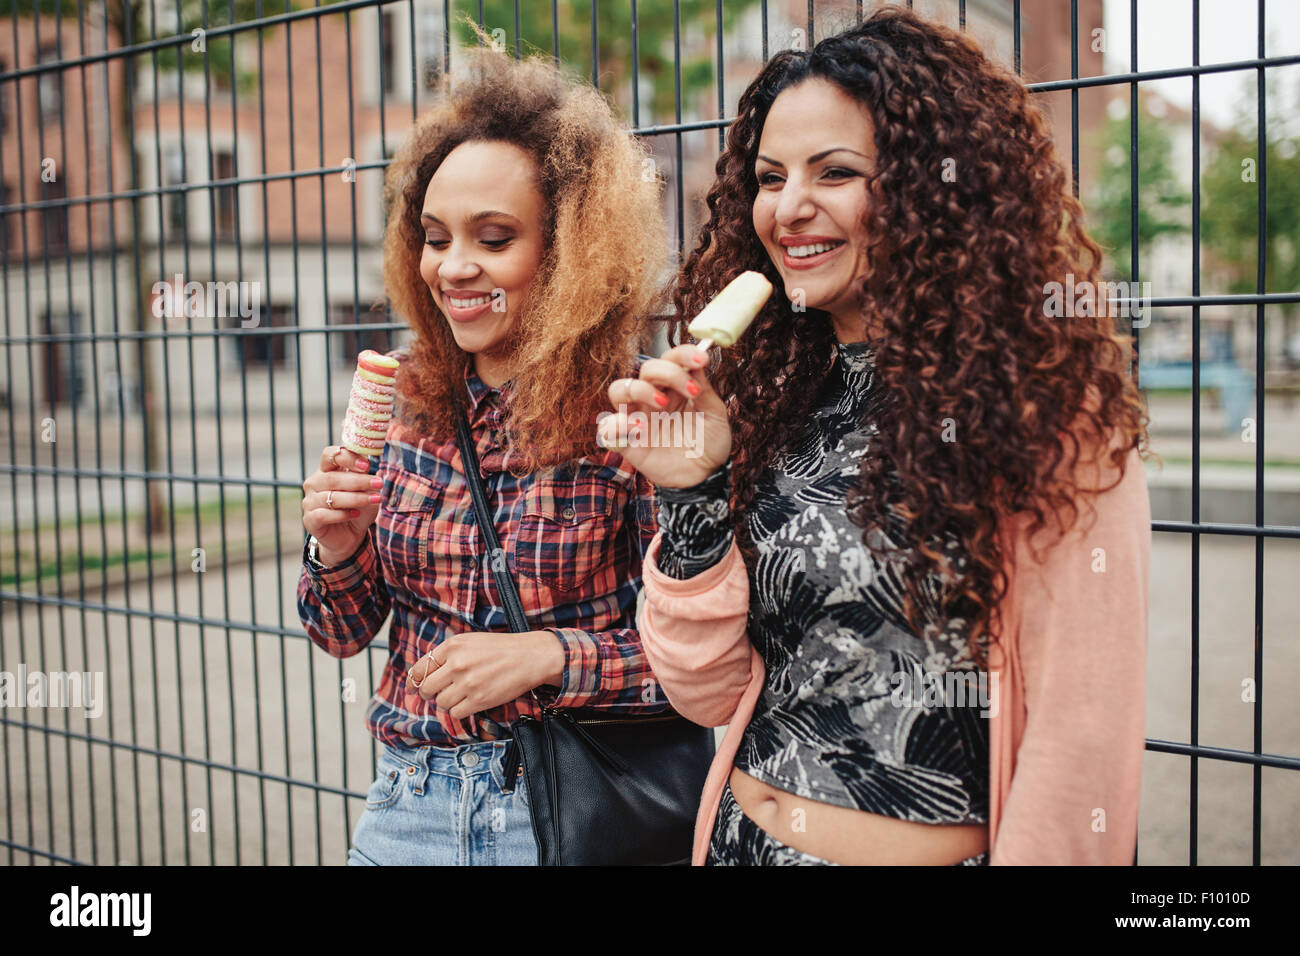 Fröhliche junge Mädchen essen Süßigkeiten Eis. Zwei junge Frauen stehen gegen einen Zaun lächelnd, im Freien. Stockfoto